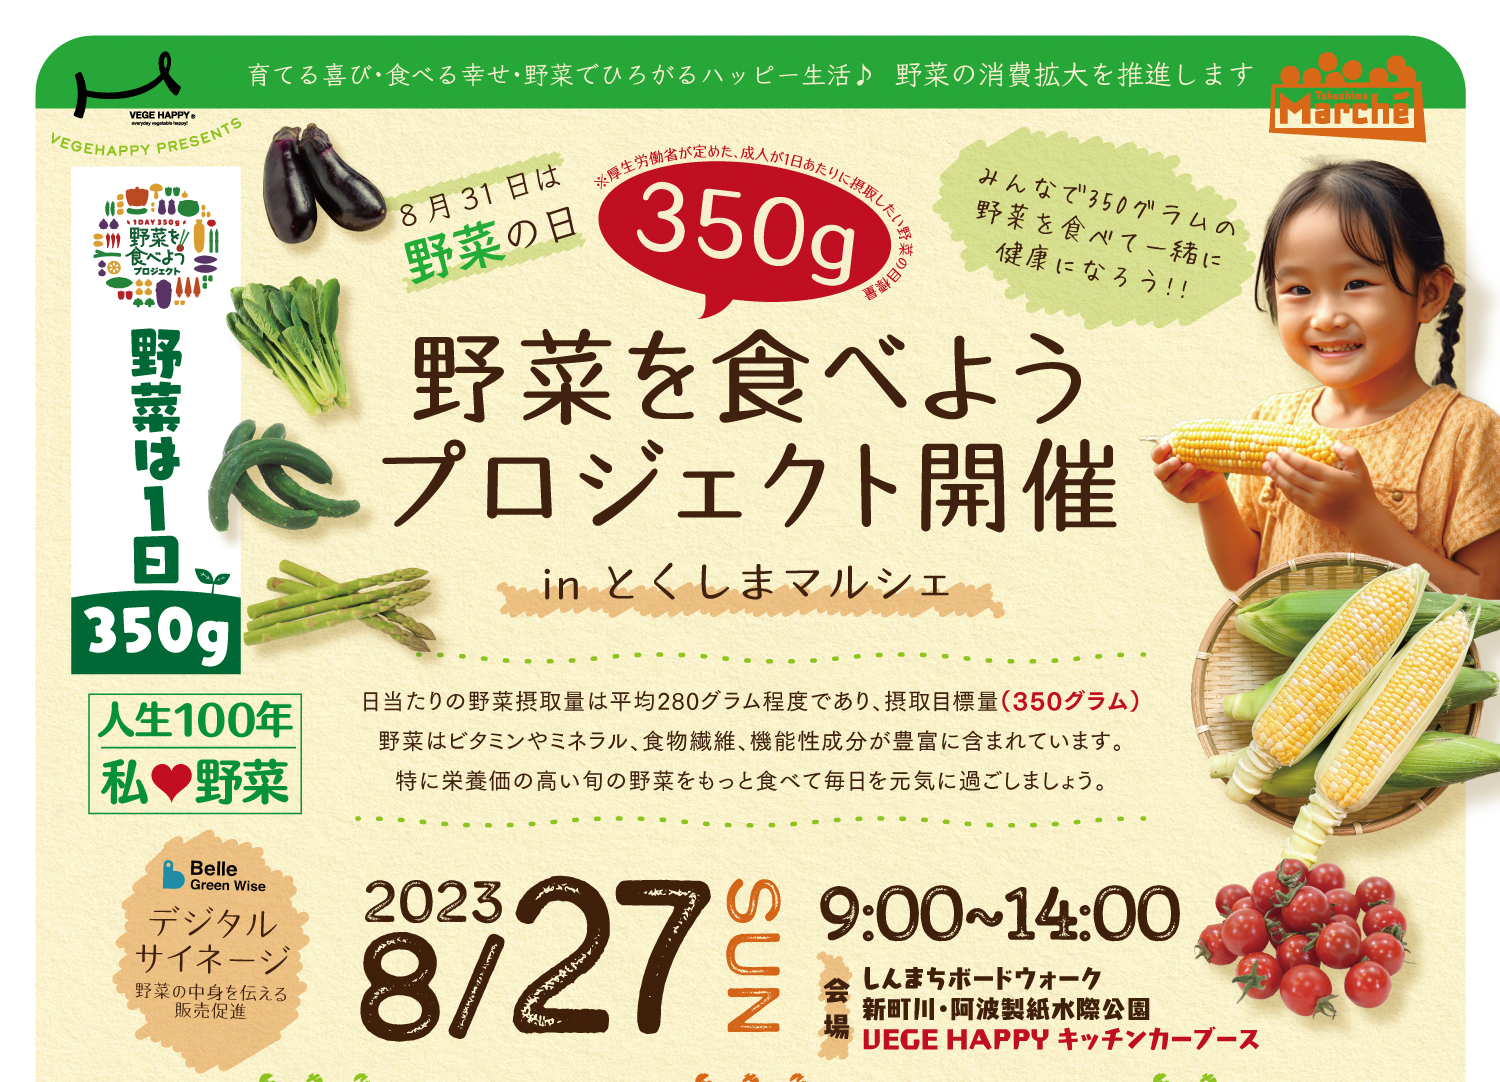 【8月27日】野菜を食べようプロジェクト開催 in とくしまマルシェ